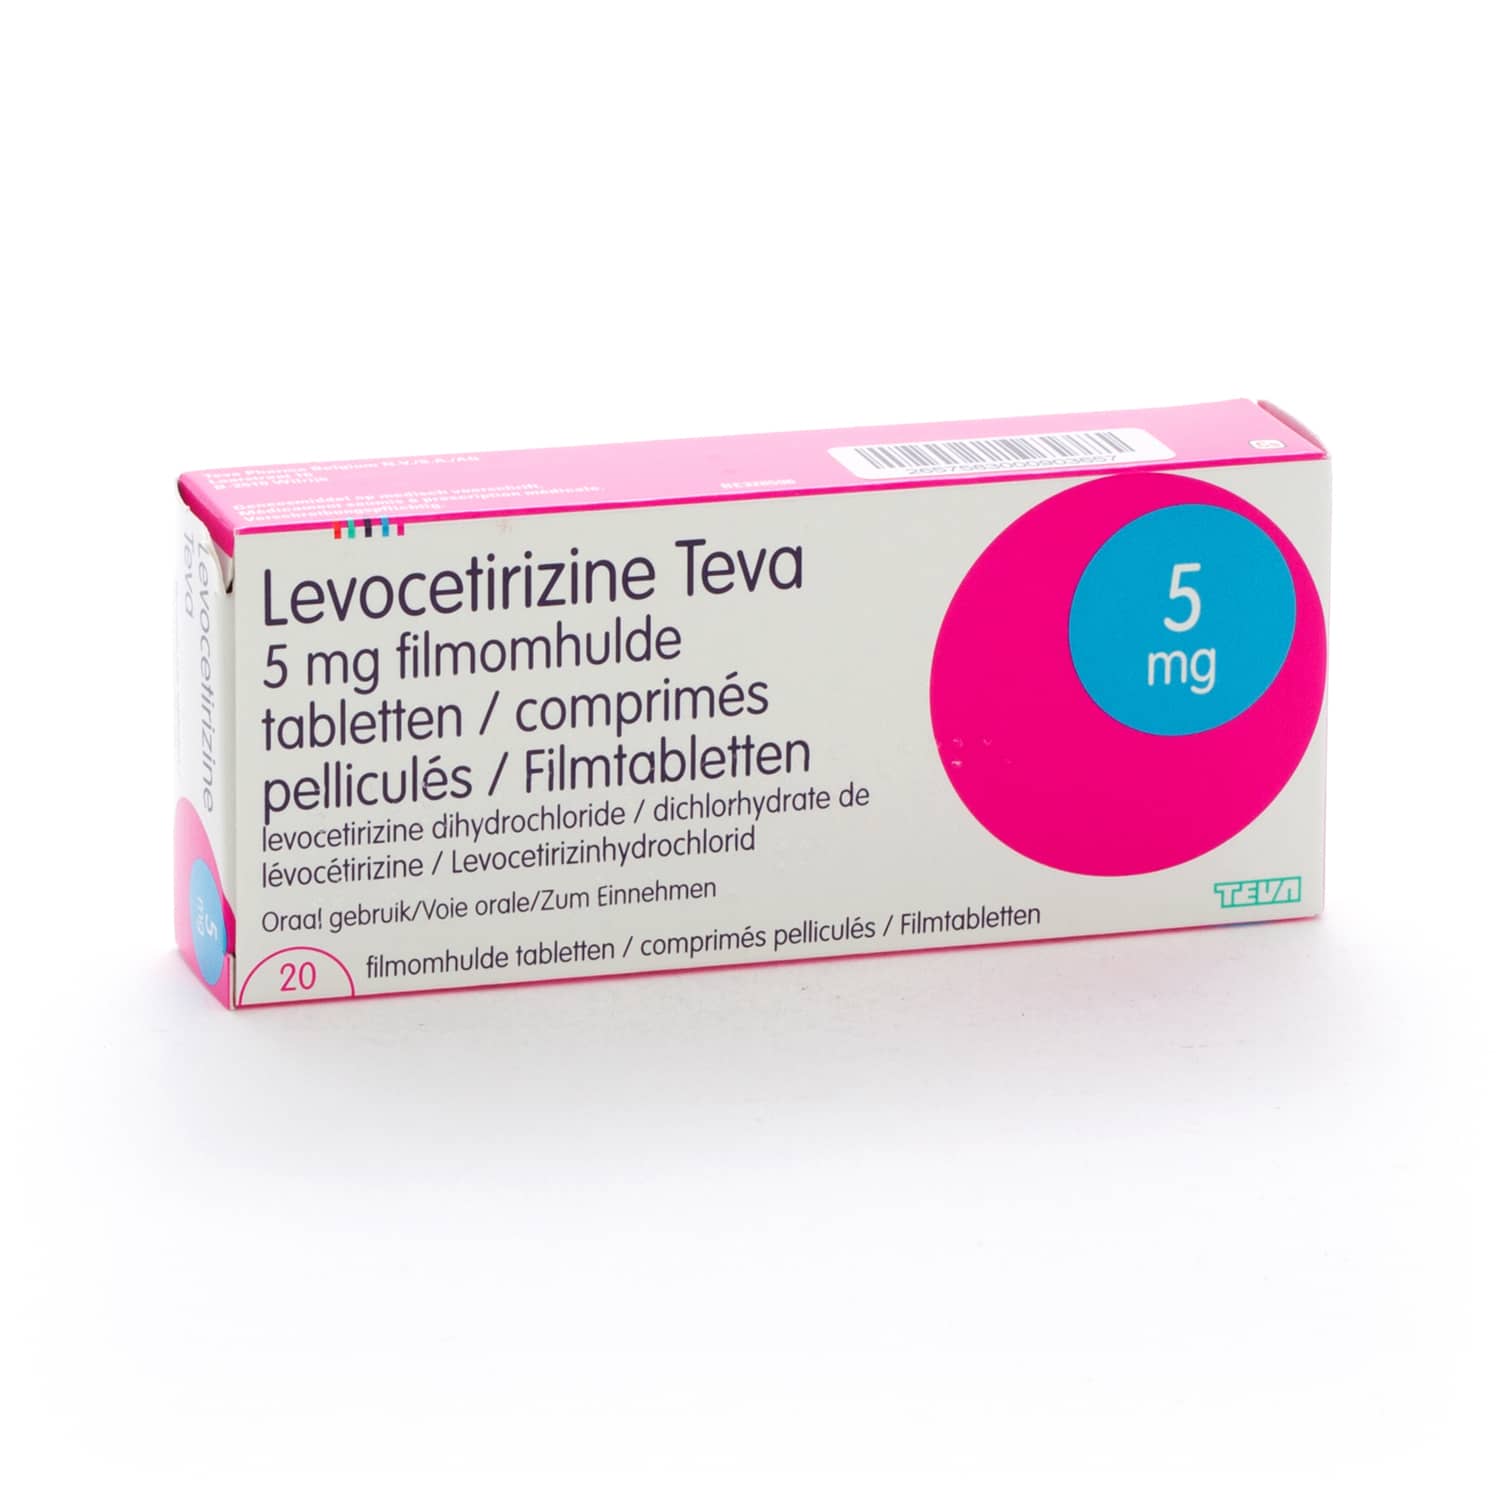 Levocetirizine Teva 5 mg